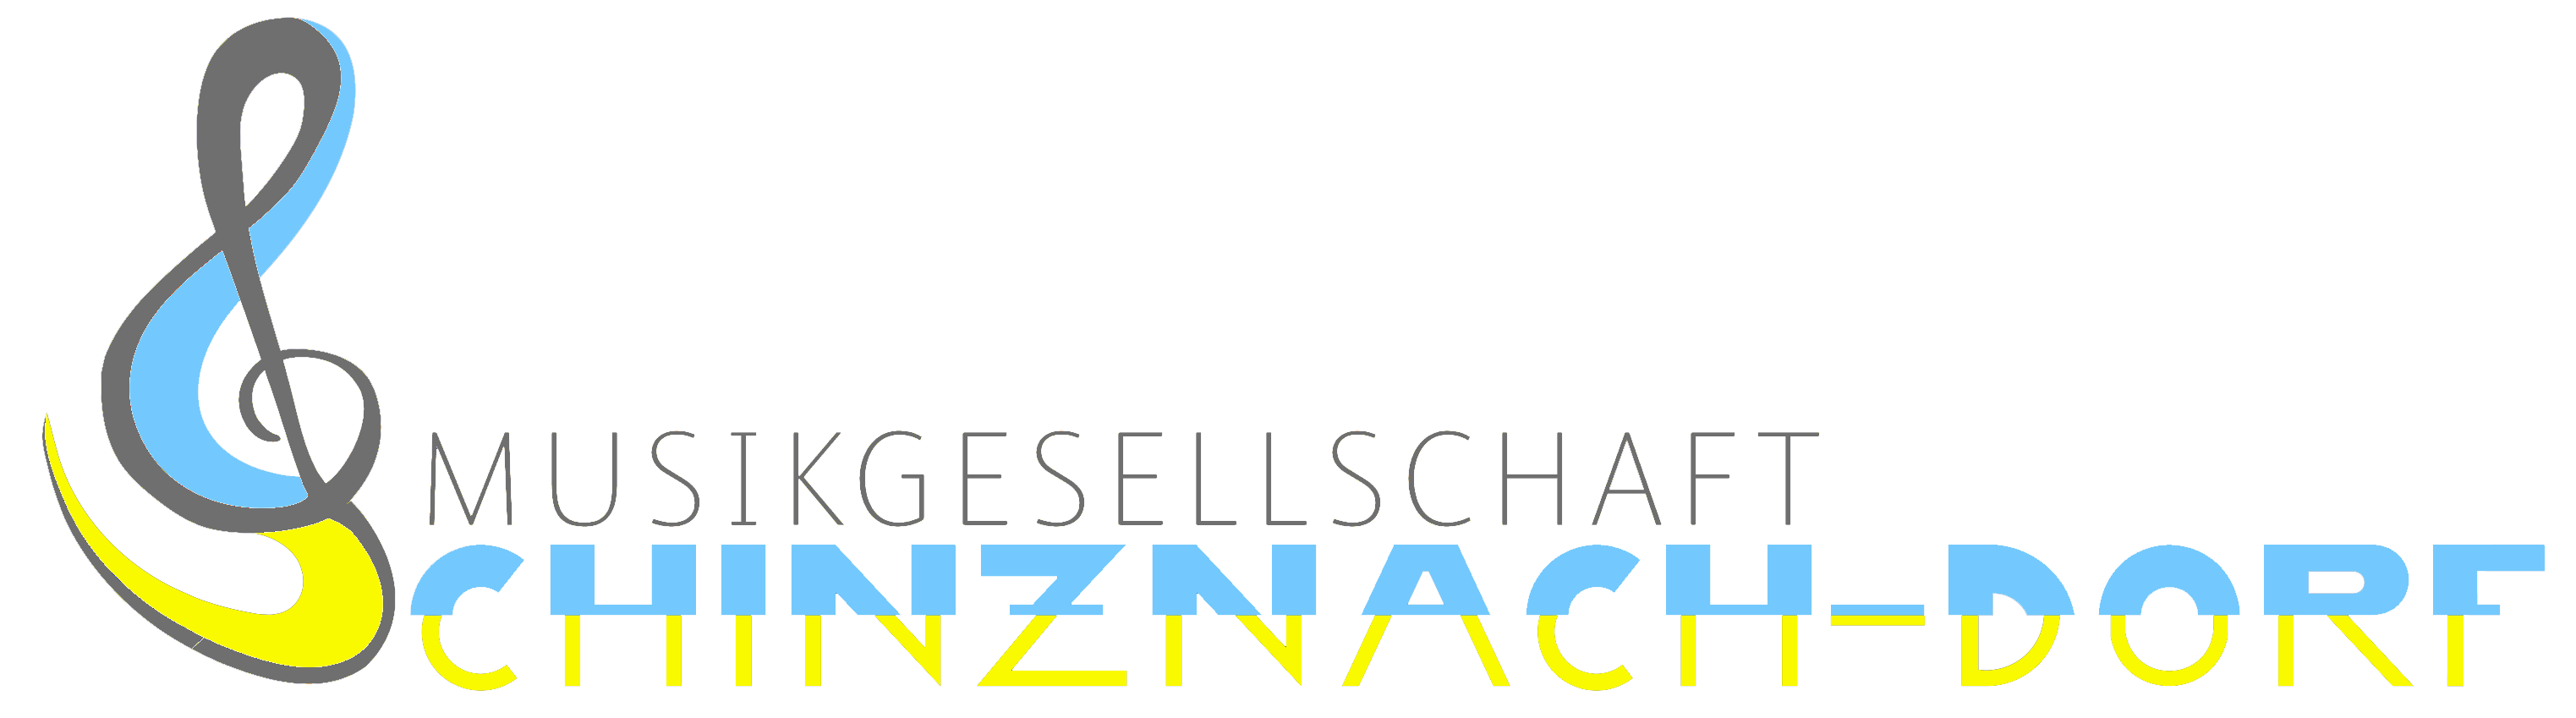 (c) Mgschinznach.ch